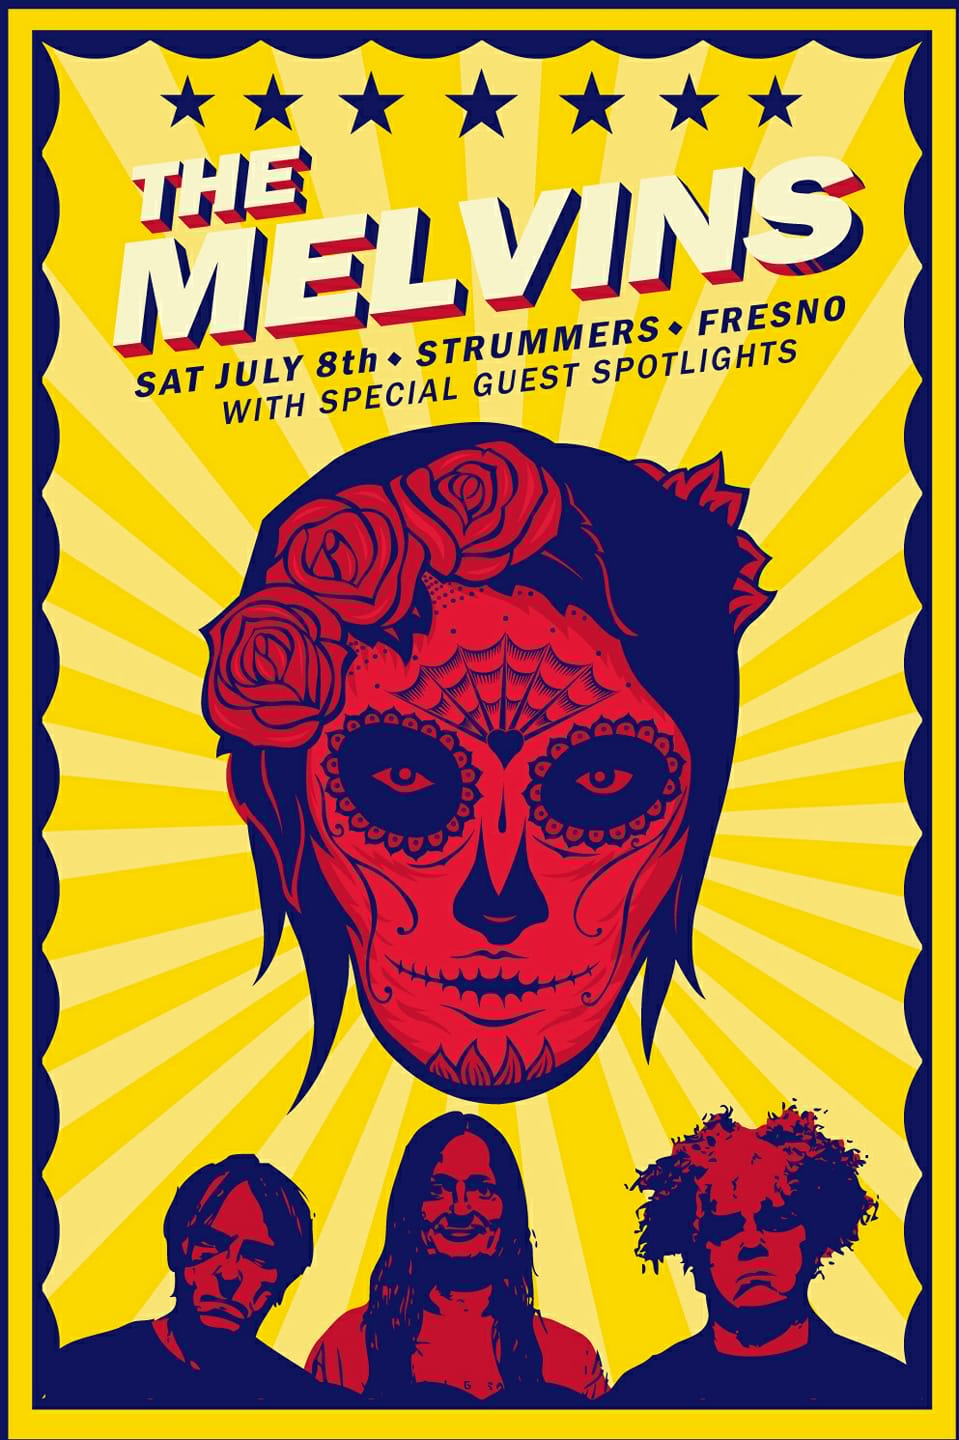 Melvins 7-17 strummers flyer 3